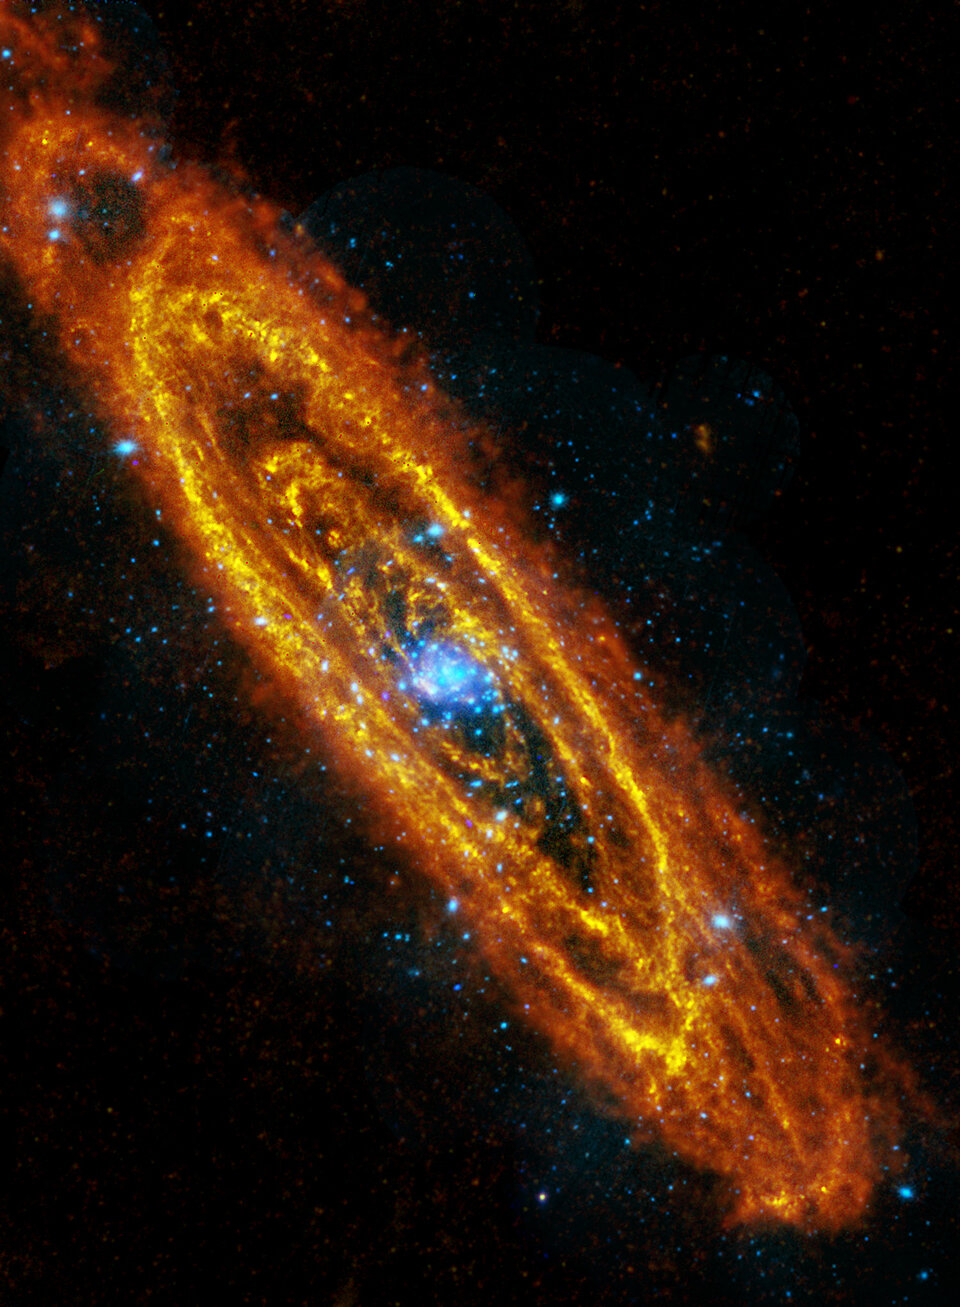 Andromeda Galaxy seen by ESA's Herschel